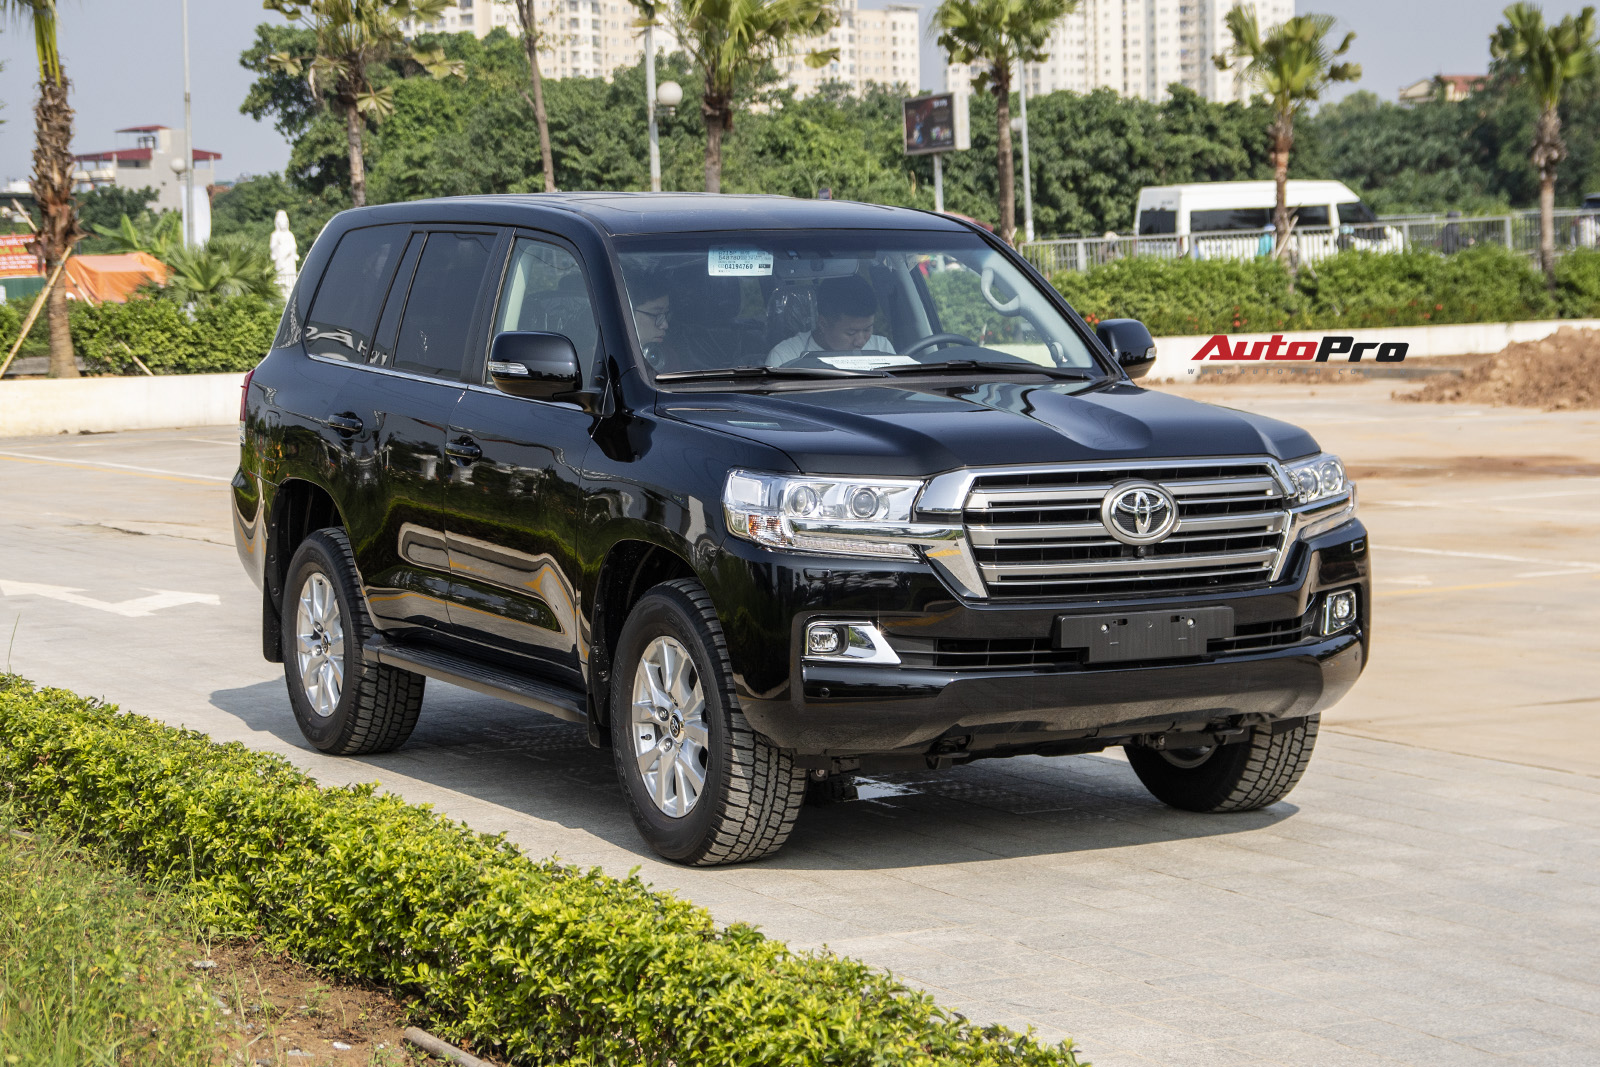 Toyota Land Cruiser thế hệ mới sắp trình làng